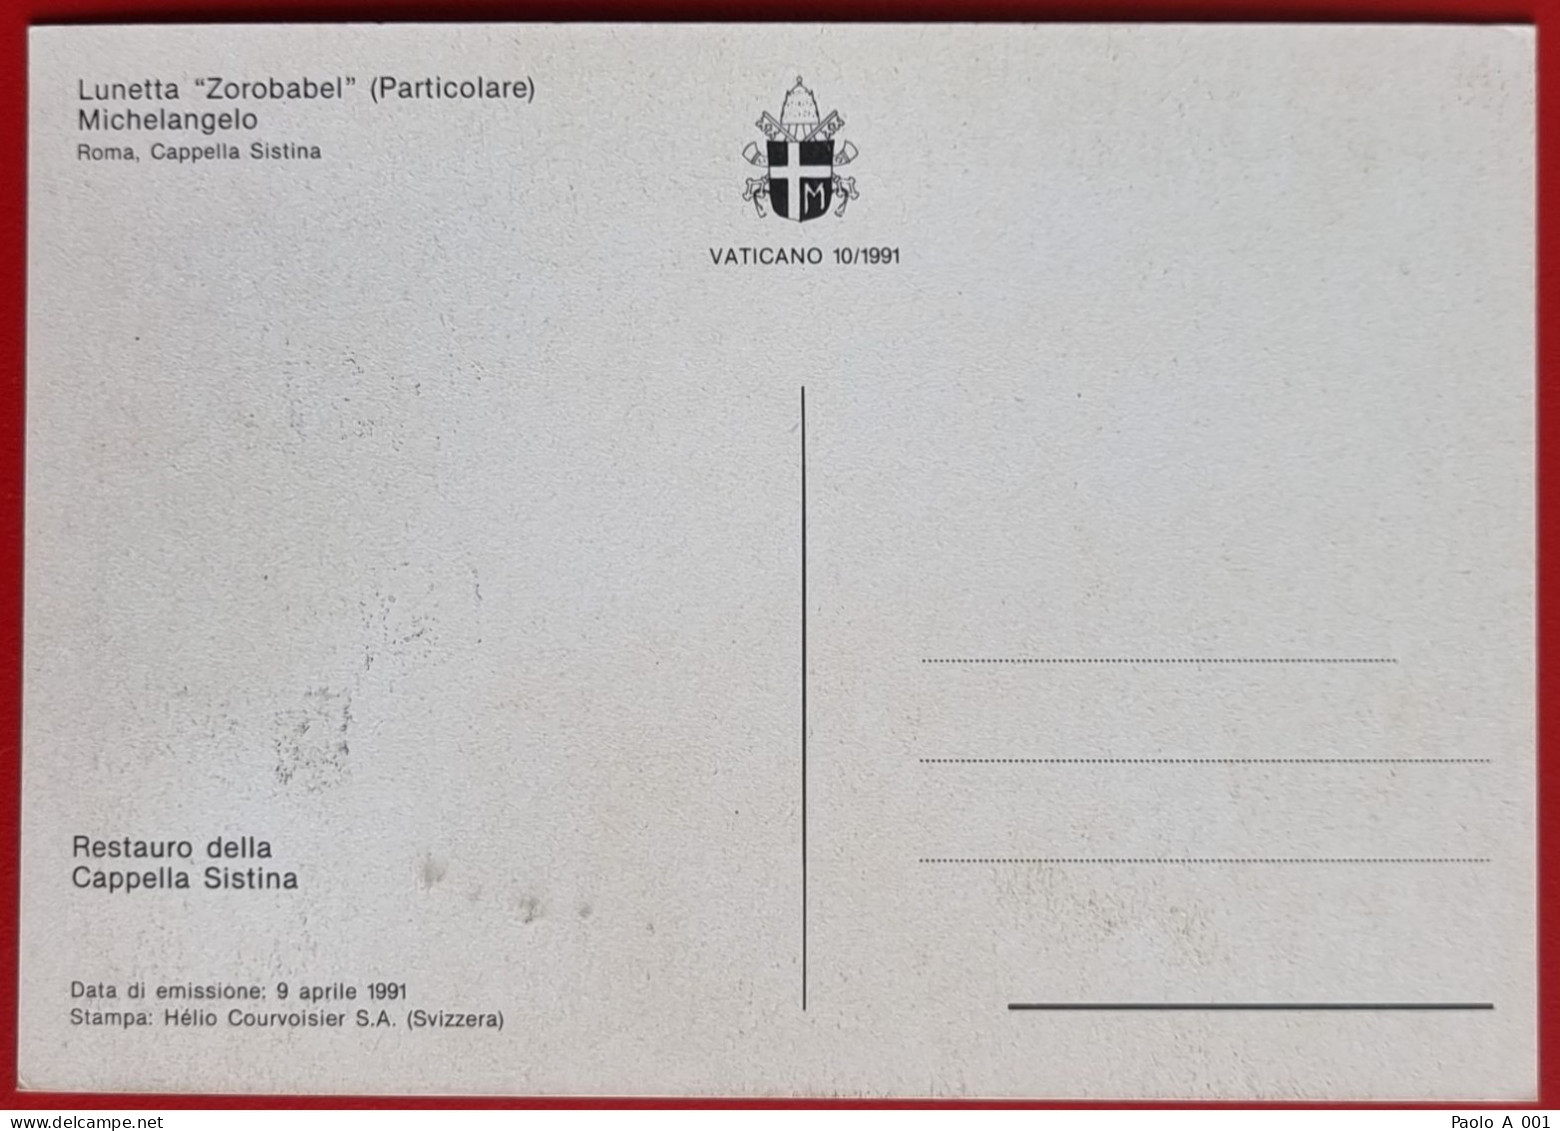 VATICANO VATIKAN VATICAN 1991 LUNETTA ZOROBABEL CAPPELLA SISTINA SISTINE CHAPEL MAXIMUM CARD - Covers & Documents